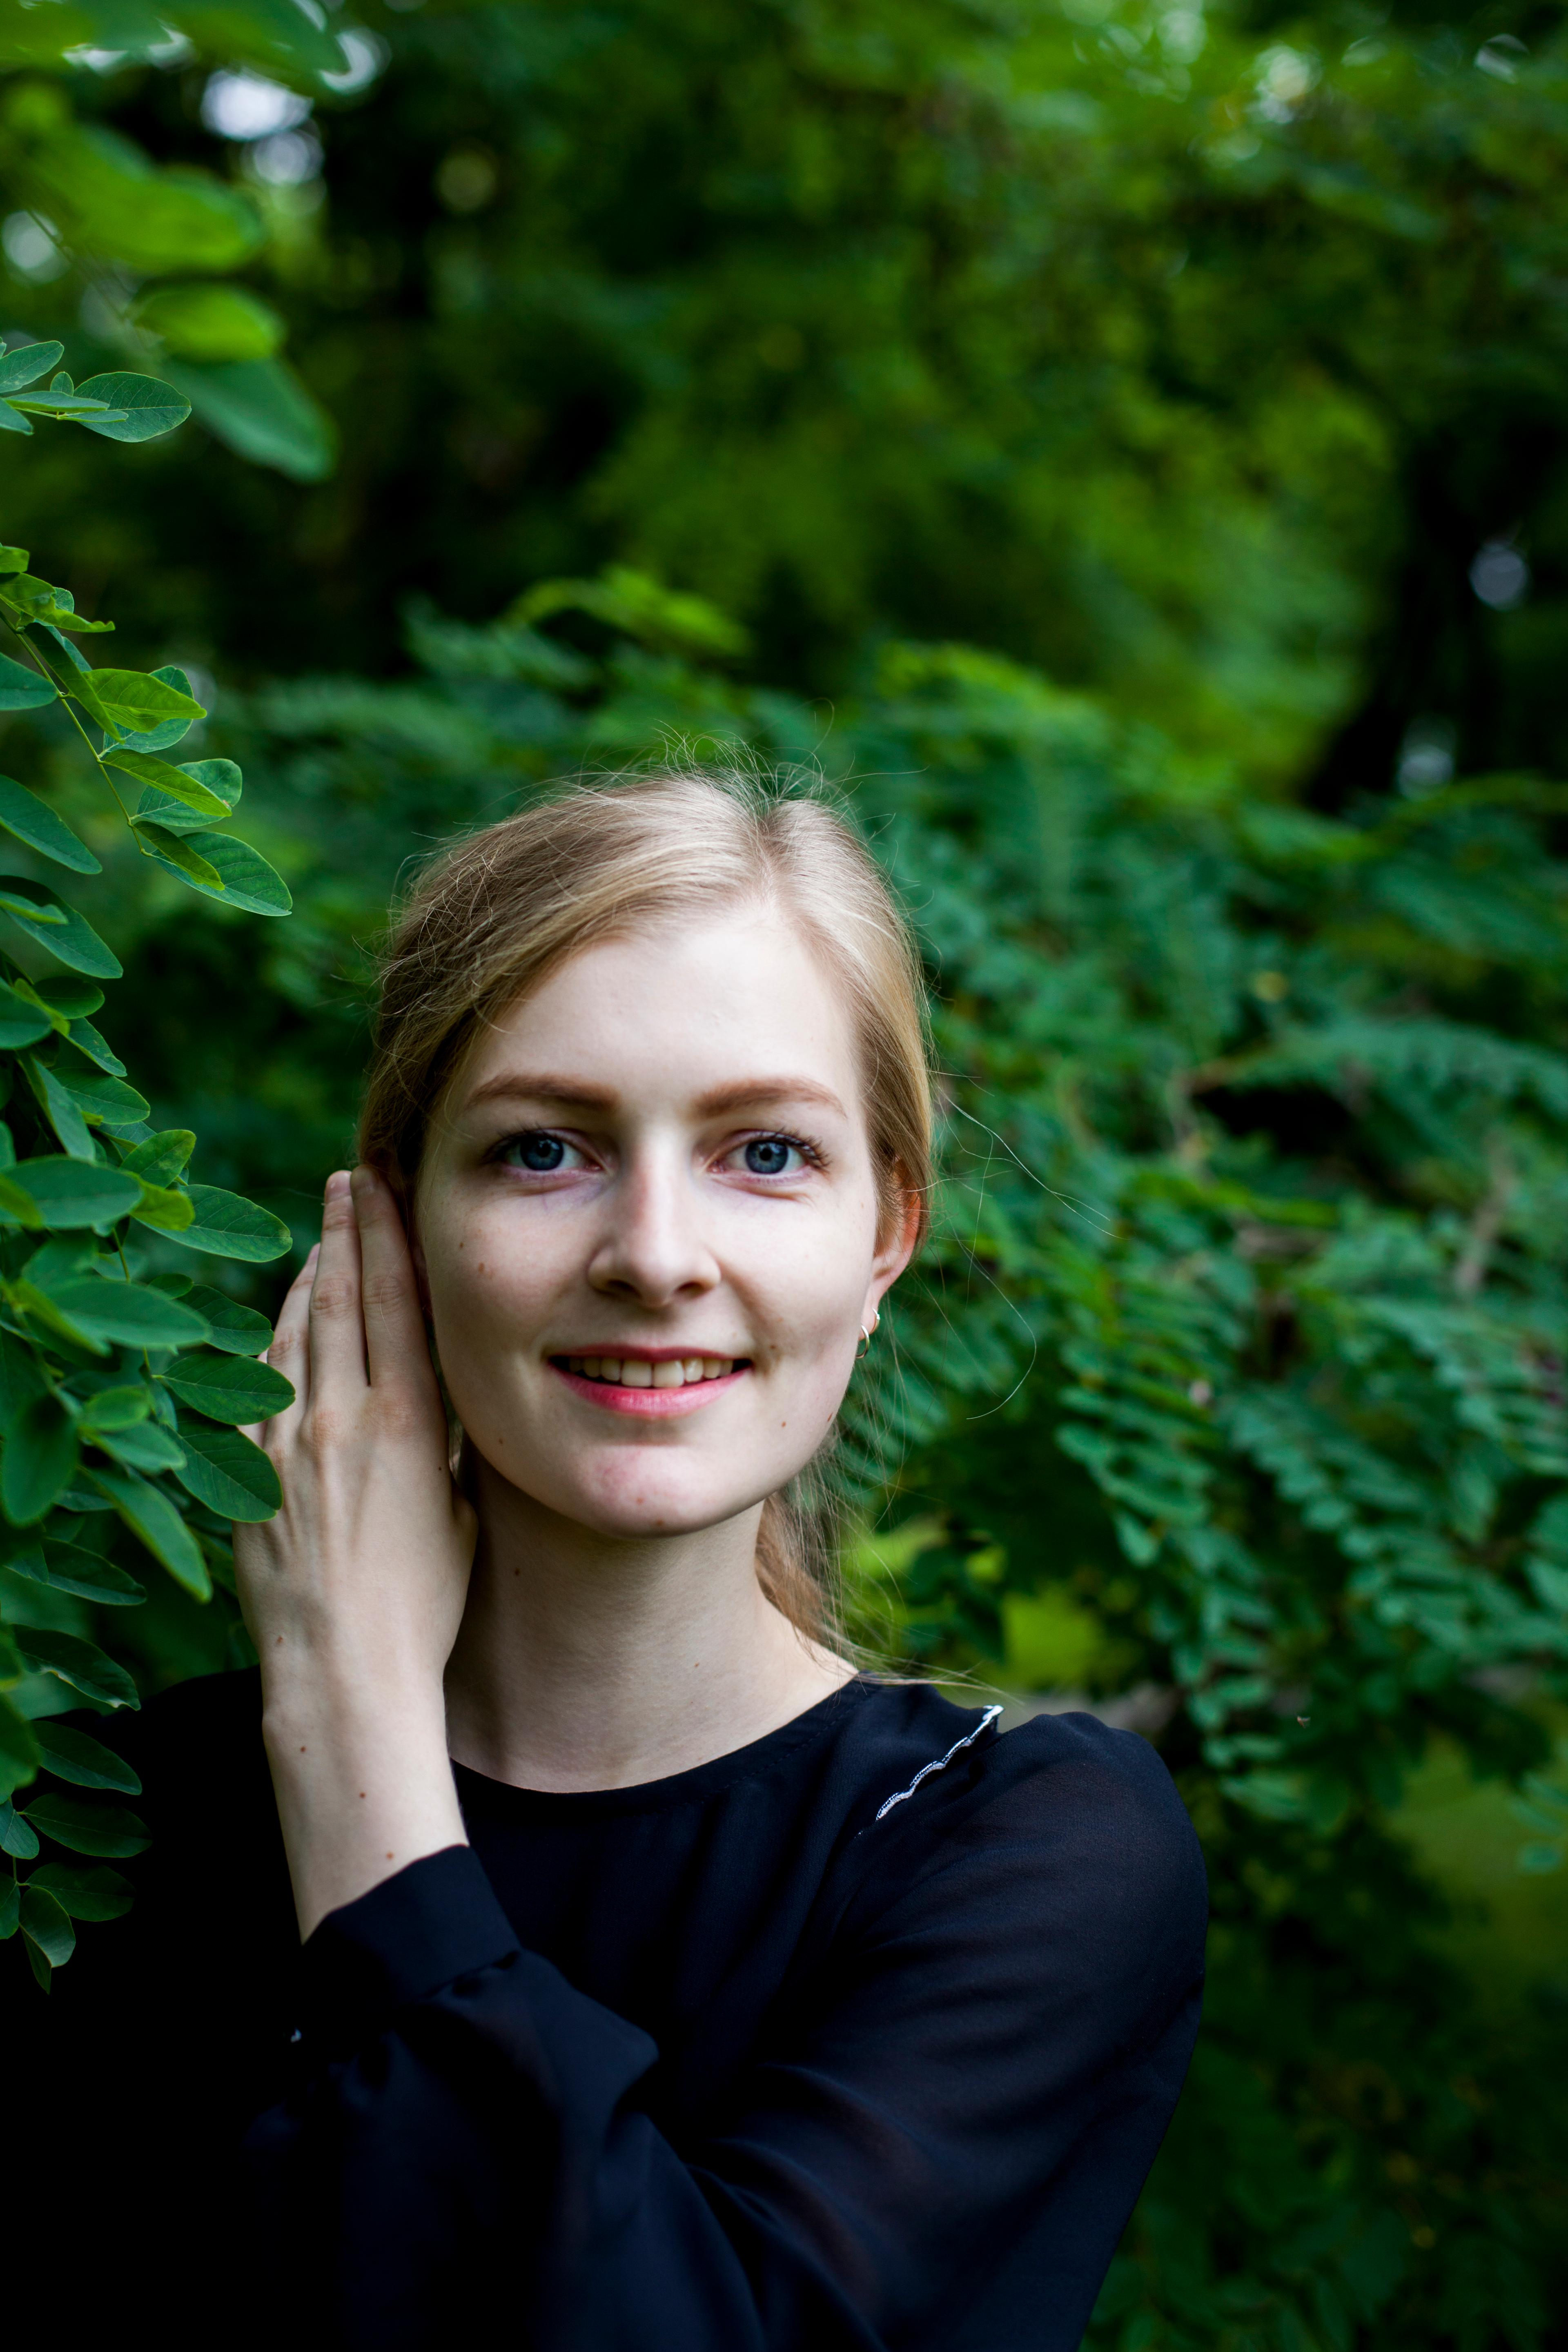 Portrett av pianisten Siril Valberg som står i en grønn skog. Hun ser rett frem og smiler, trekker håret bak øret med venstre hånd.